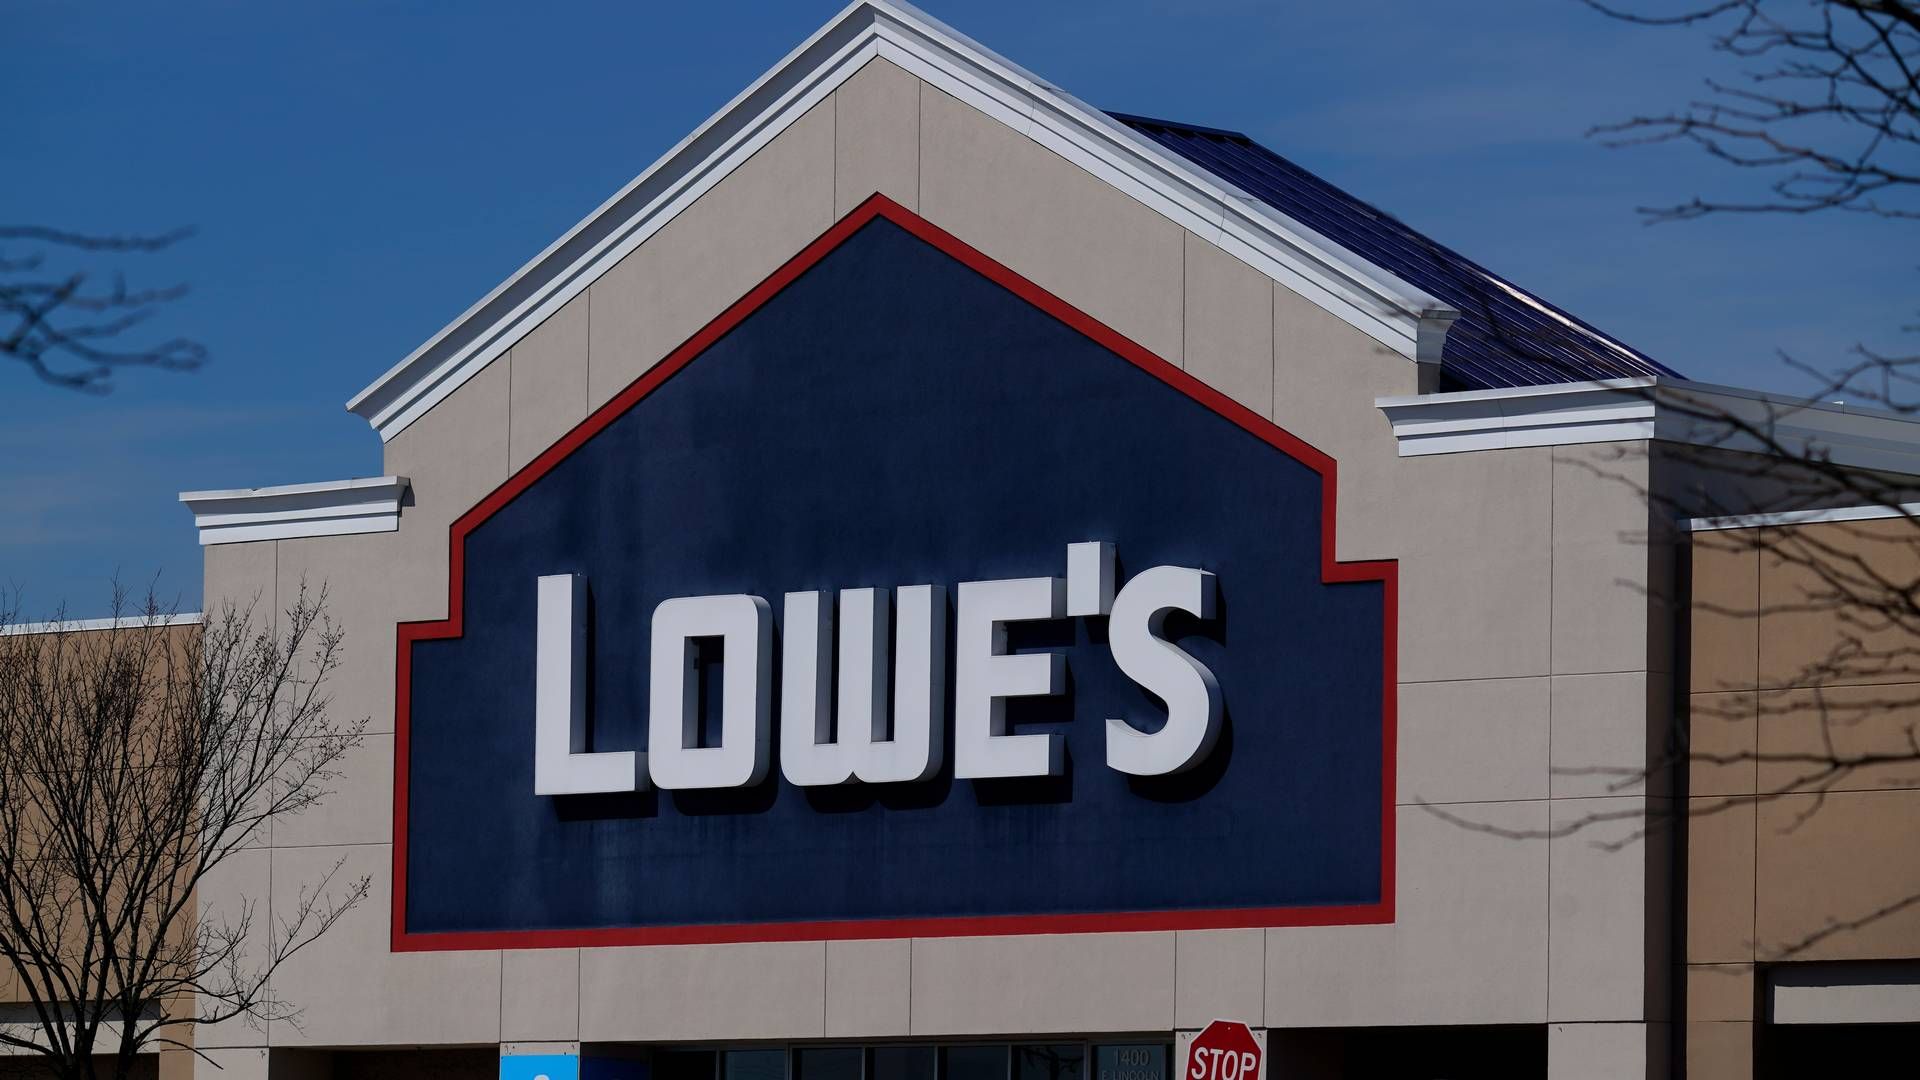 Byggemarkedet Lowe's har rødder tilbage til 1921 og er stiftet af L.S. Lowe. | Foto: Matt Rourke/ap/ritzau Scanpix